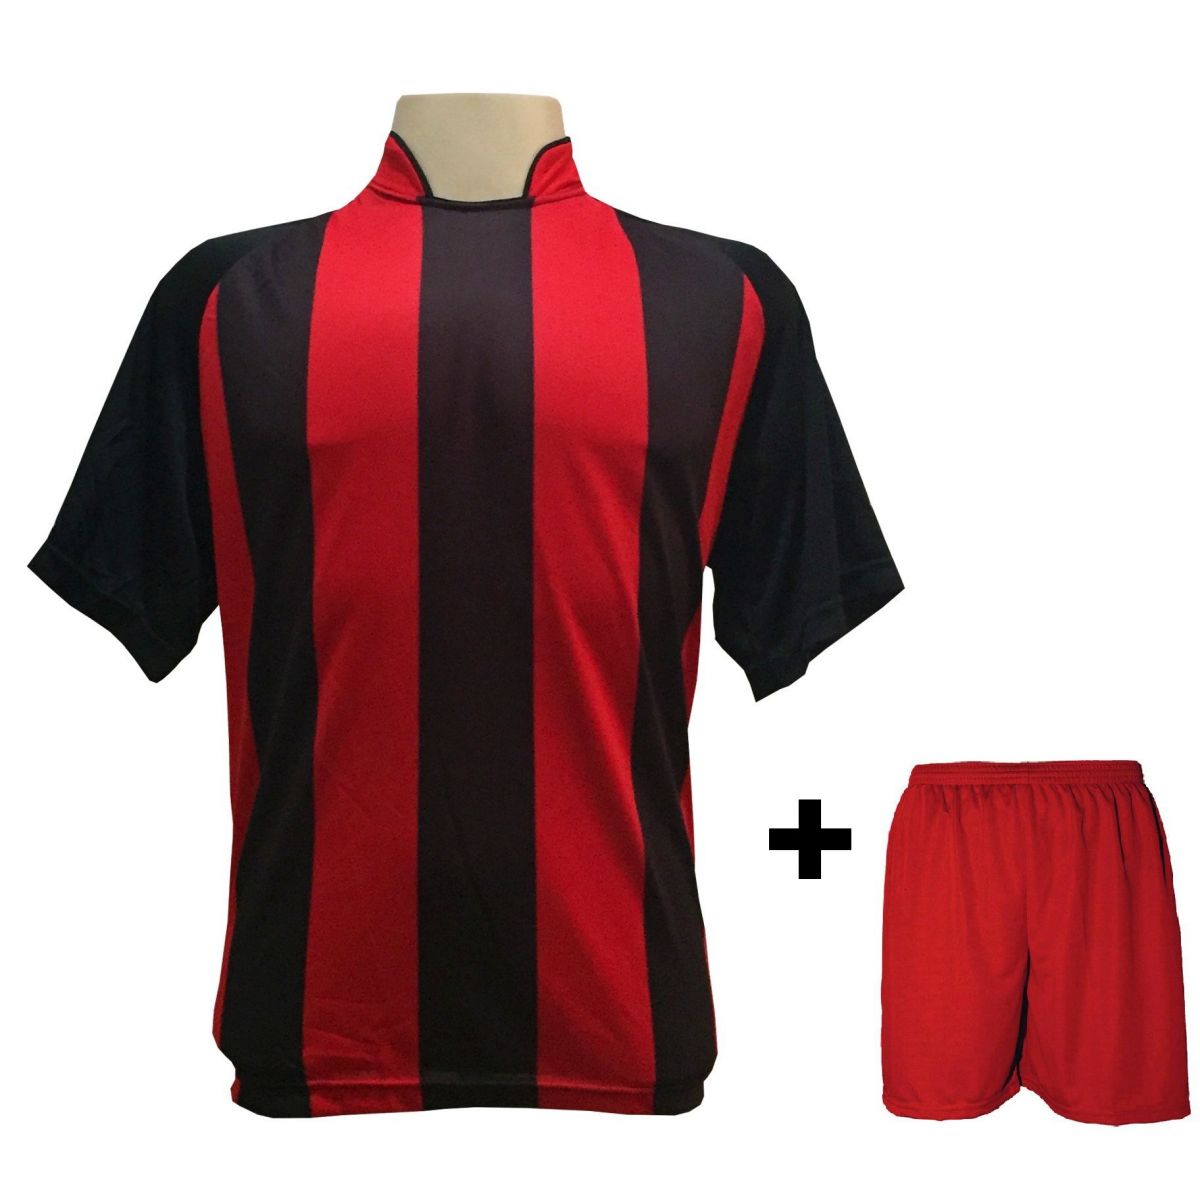 Uniforme Esportivo com 12 camisas modelo Milan Preto/Vermelho + 12 calções modelo Madrid + 1 Goleiro + Brindes